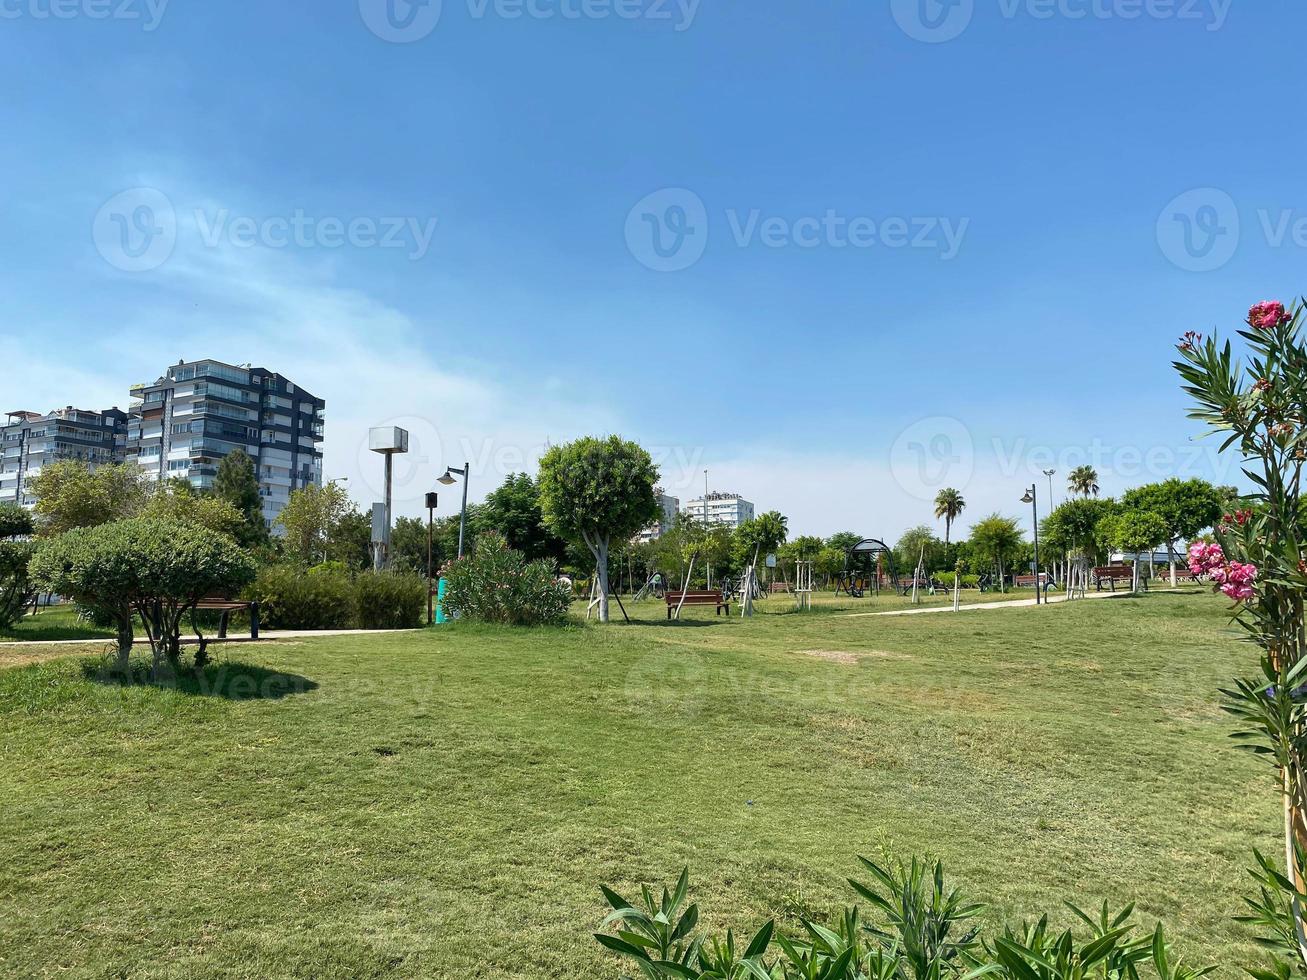 nuevo y hermoso parque moderno con plantas verdes, árboles tropicales y arbustos. lugar de descanso en la ciudad foto